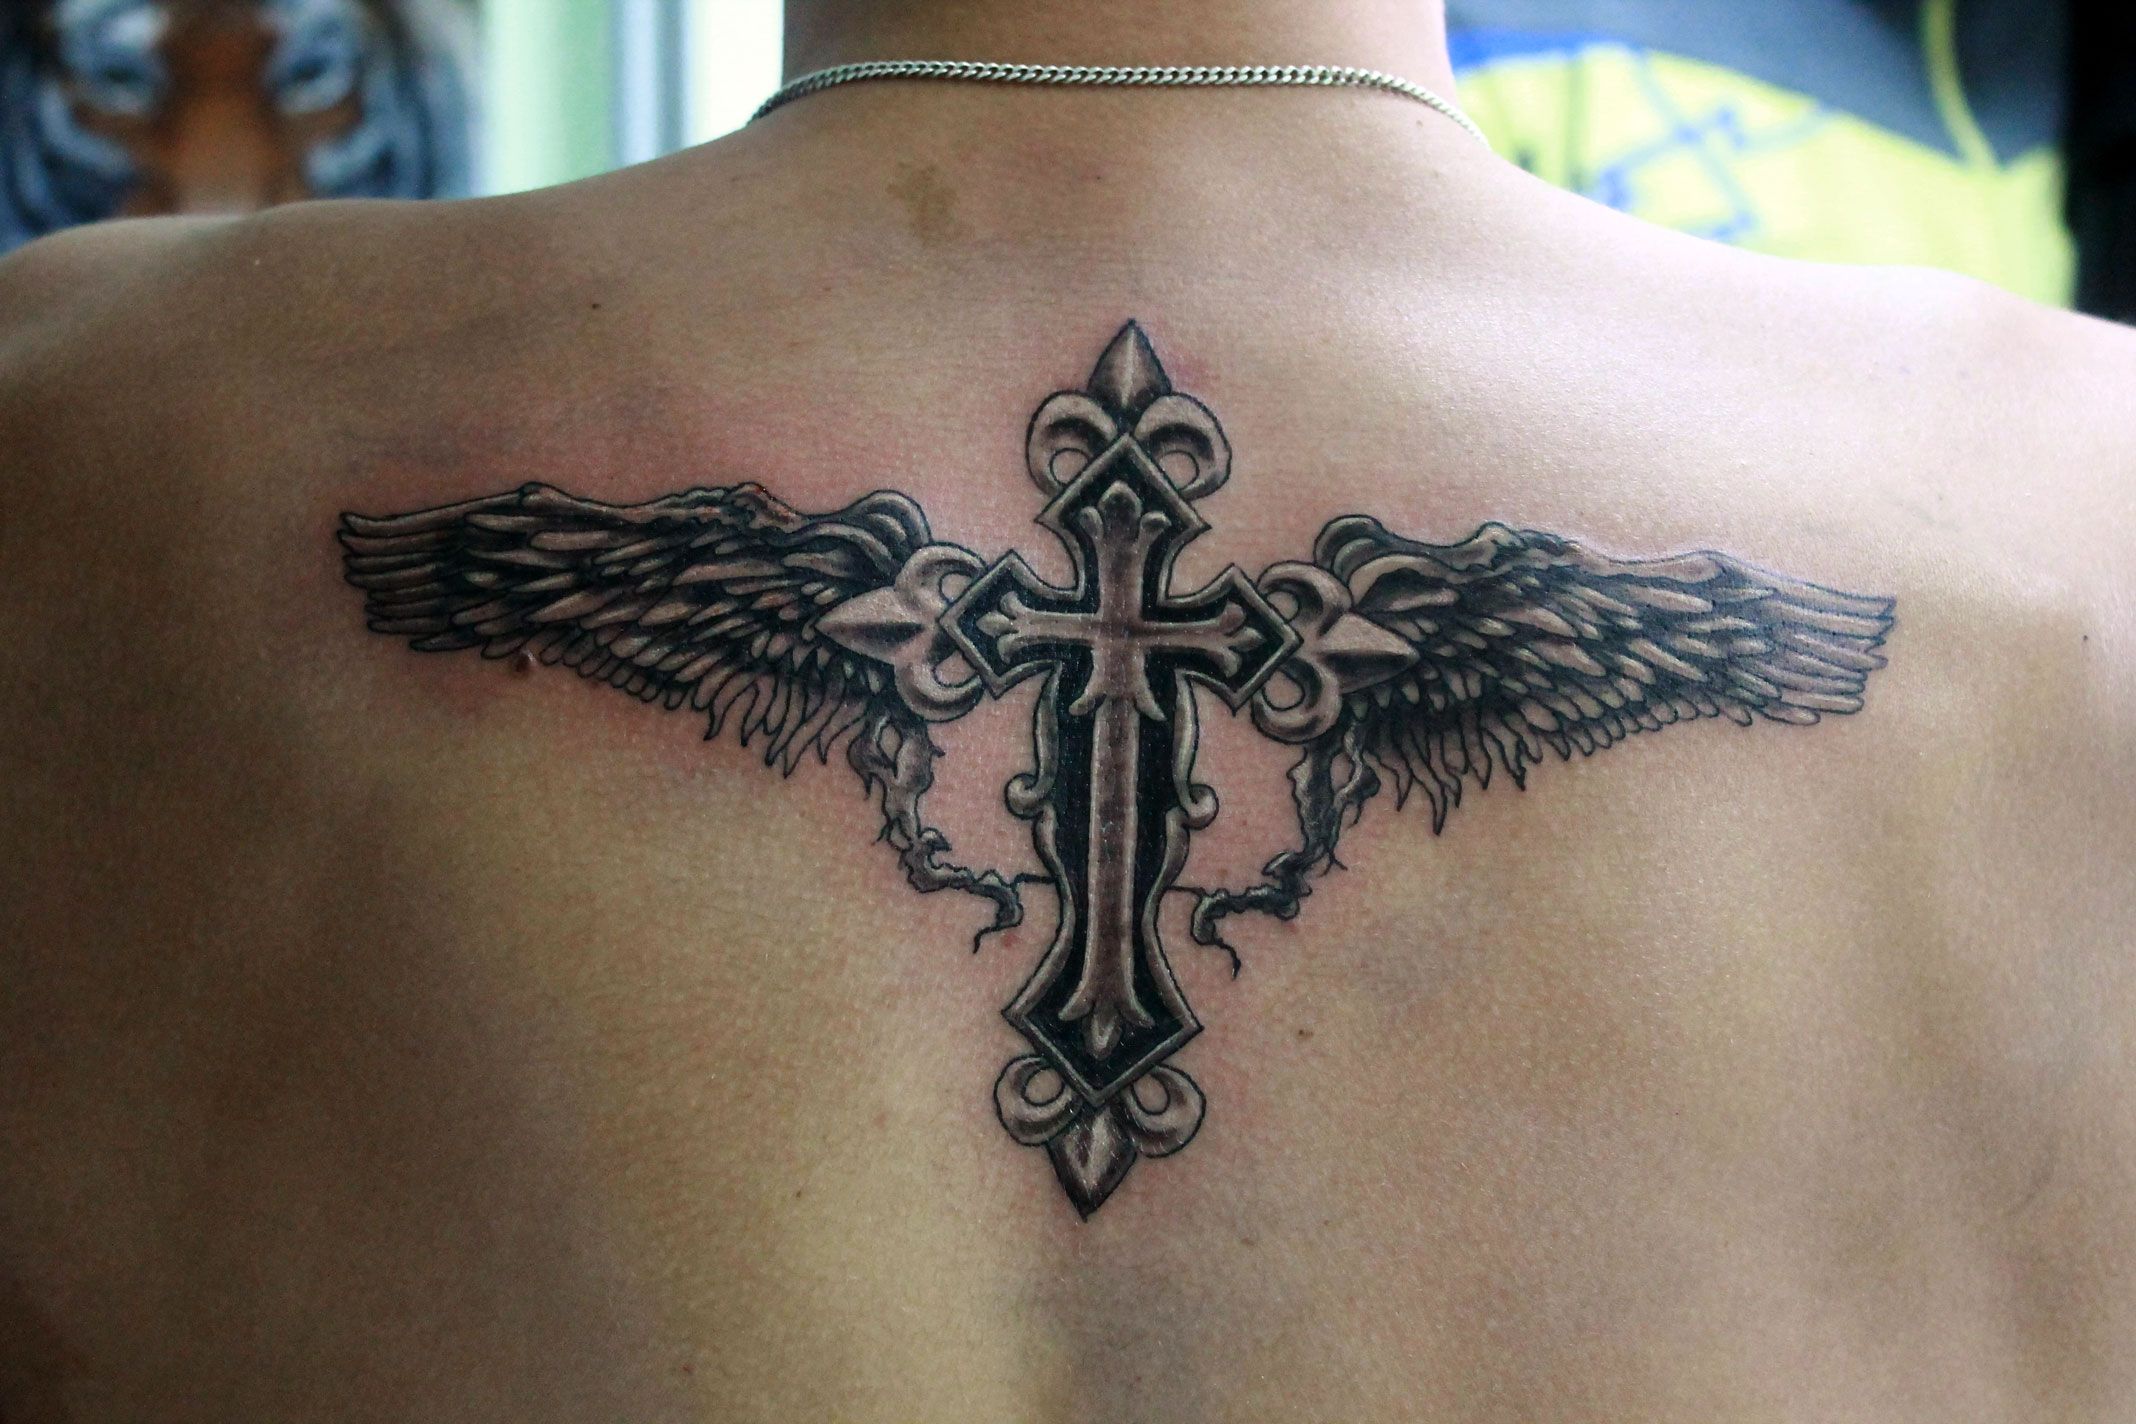 Крест с крыльями на спине